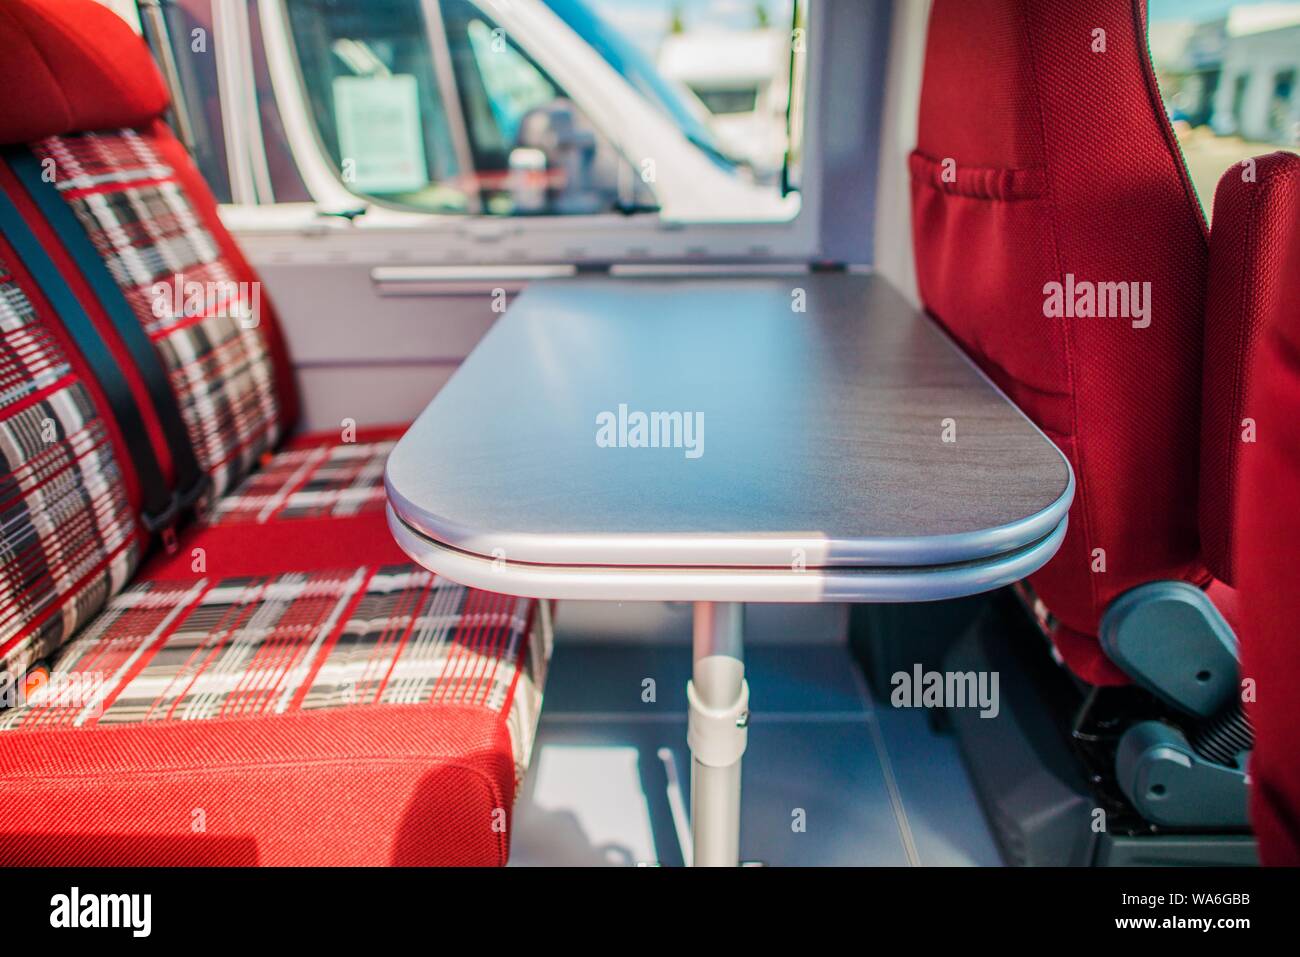 Élégante et moderne, cette Table Dinette RV Camping-car. Au cours